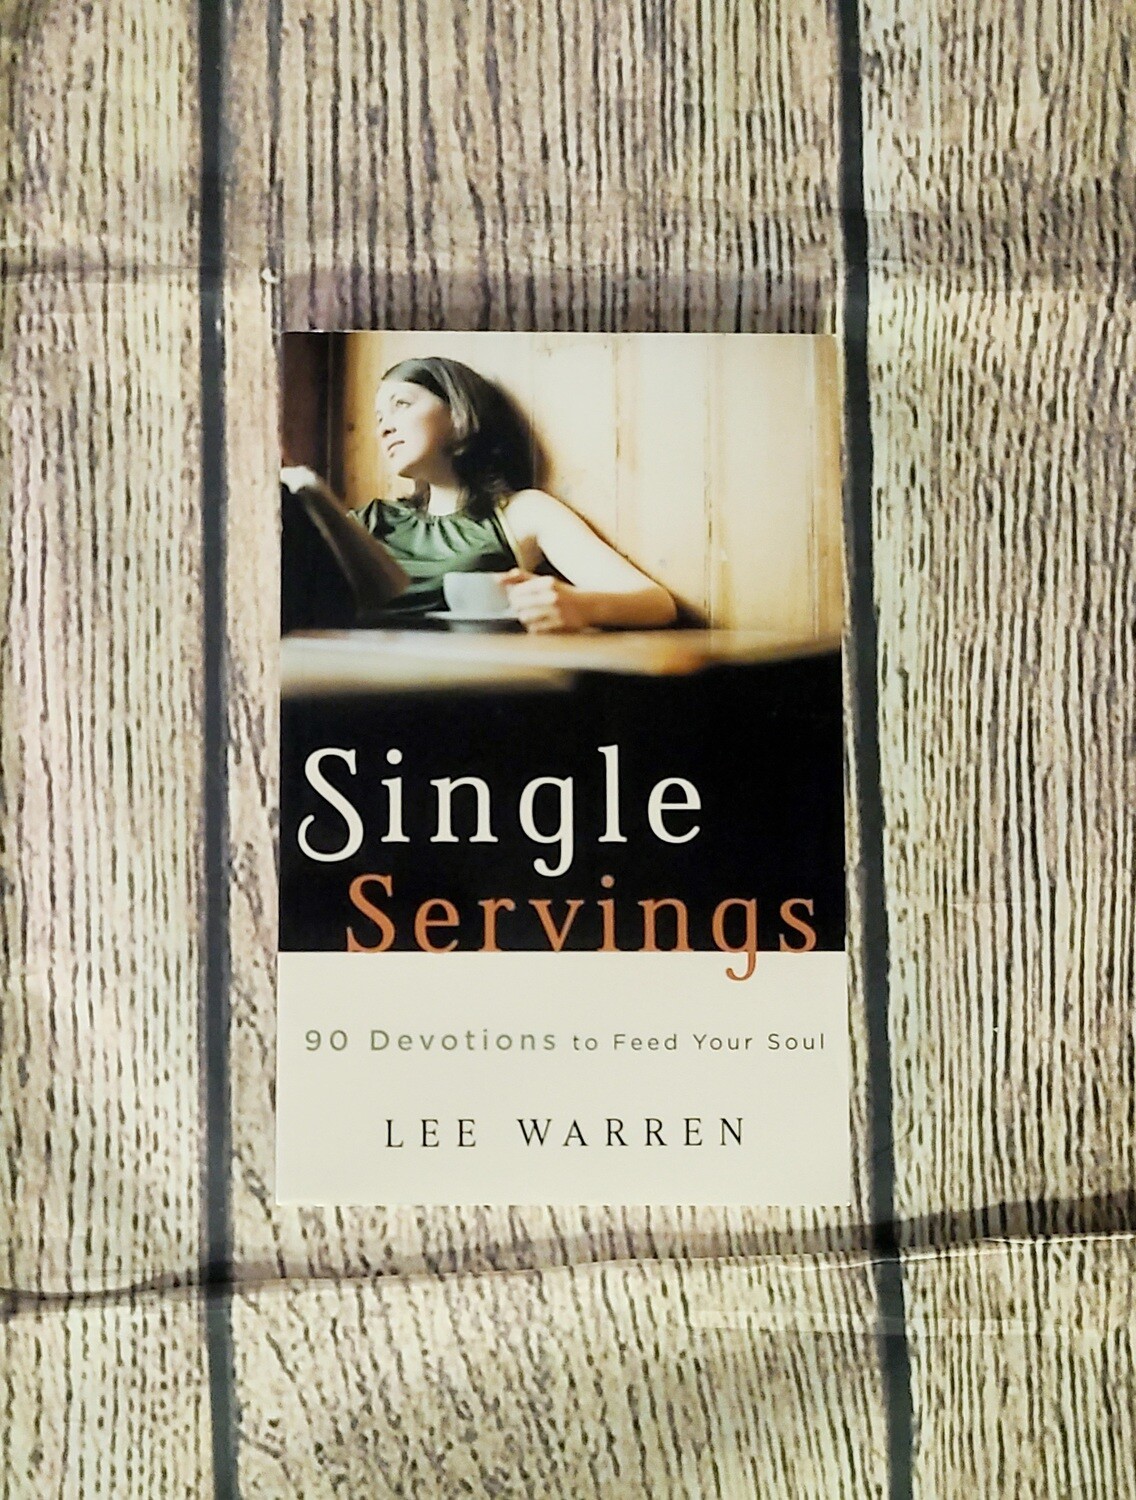 Single Servings: 90 Devotions to Feed Your Soul by Lee Warren